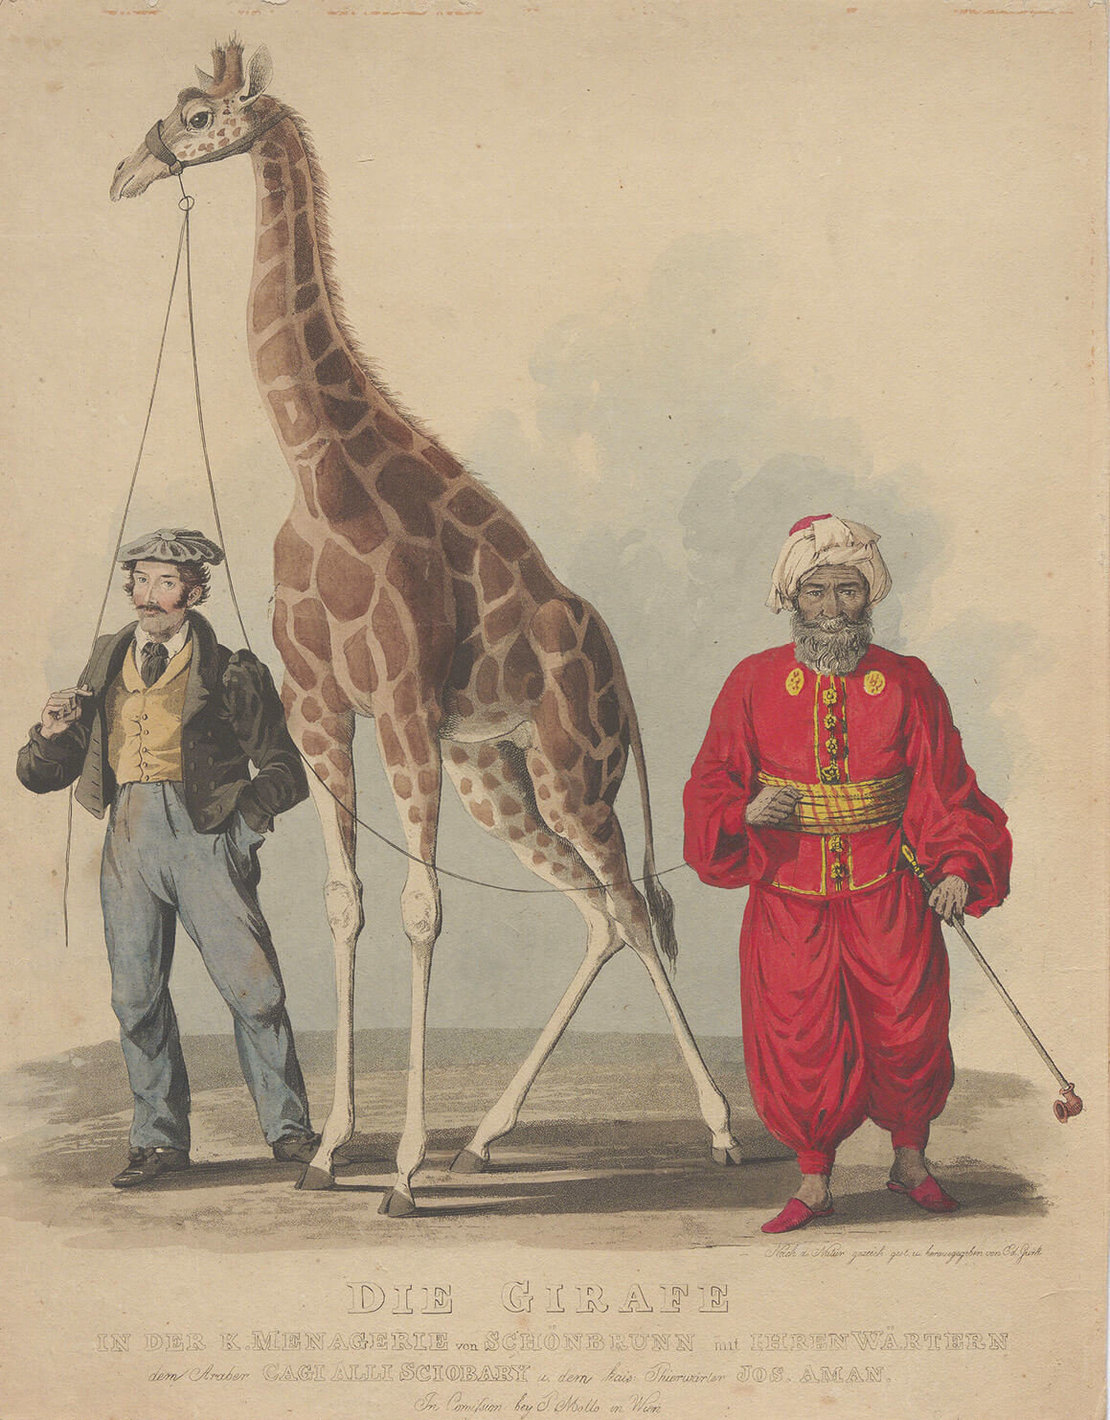 Eduard Gurk: Die erste Giraffe in Schönbrunn mit ihren Wärtern am 7. August 1828, kolorierter Kupferstich, Wien Museum 